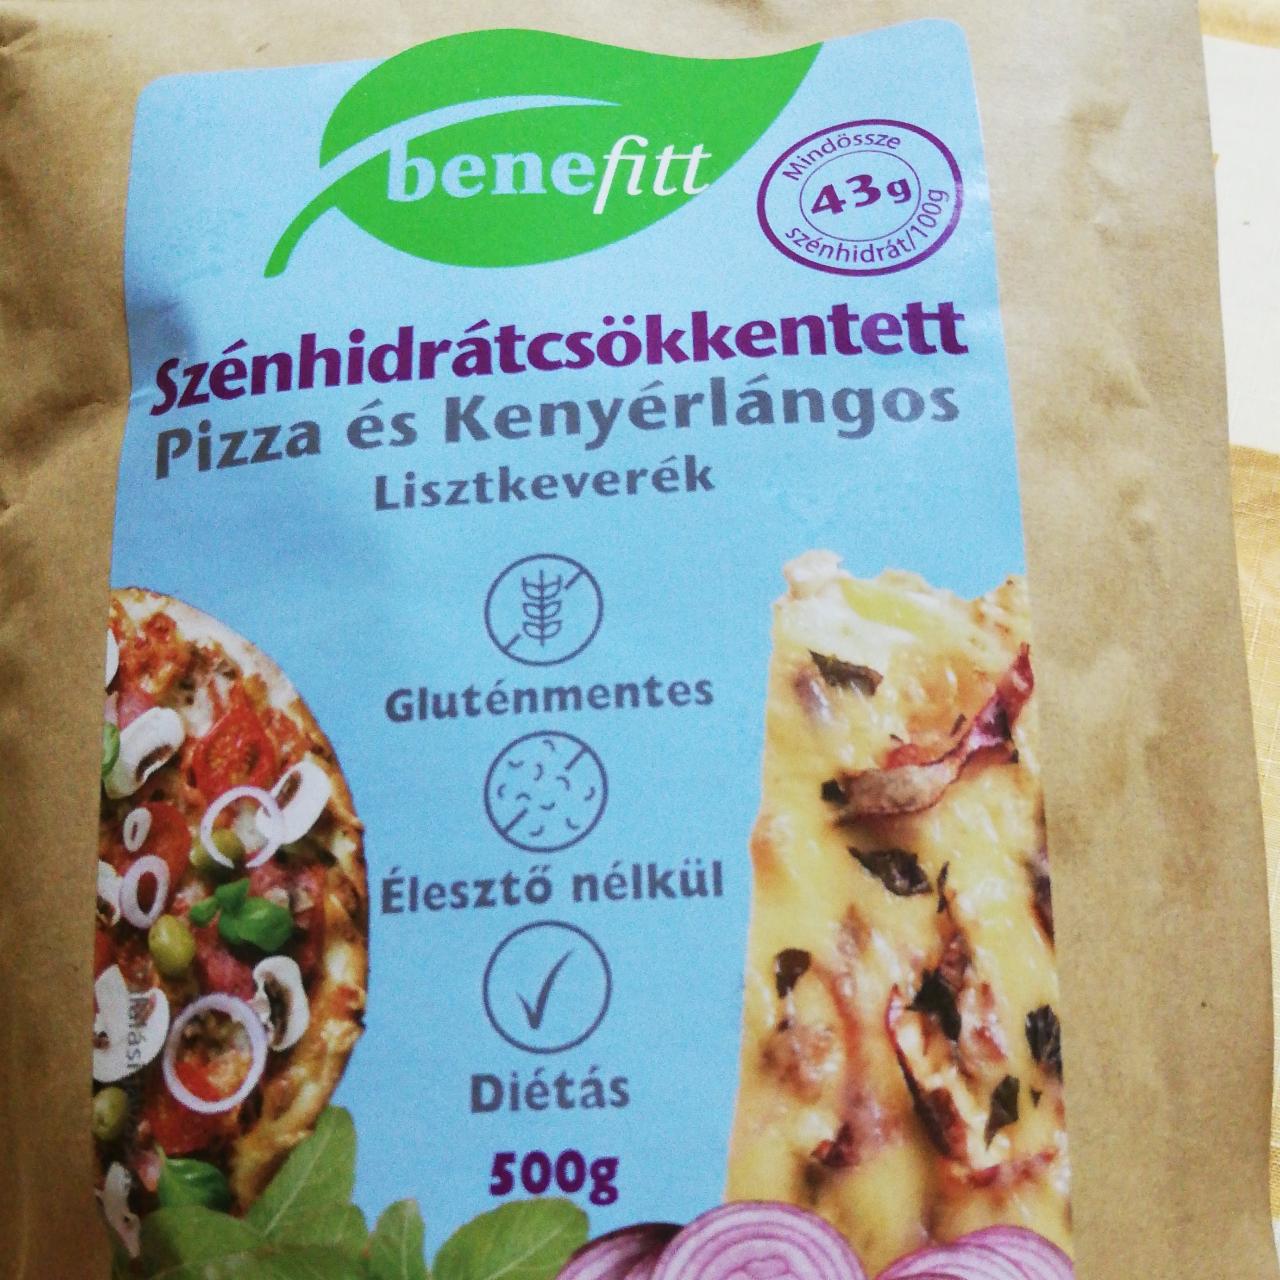 Fotografie - Szénhidrátcsökkentett Pizza és Kenyérlángos Lisztkeverék Benefitt